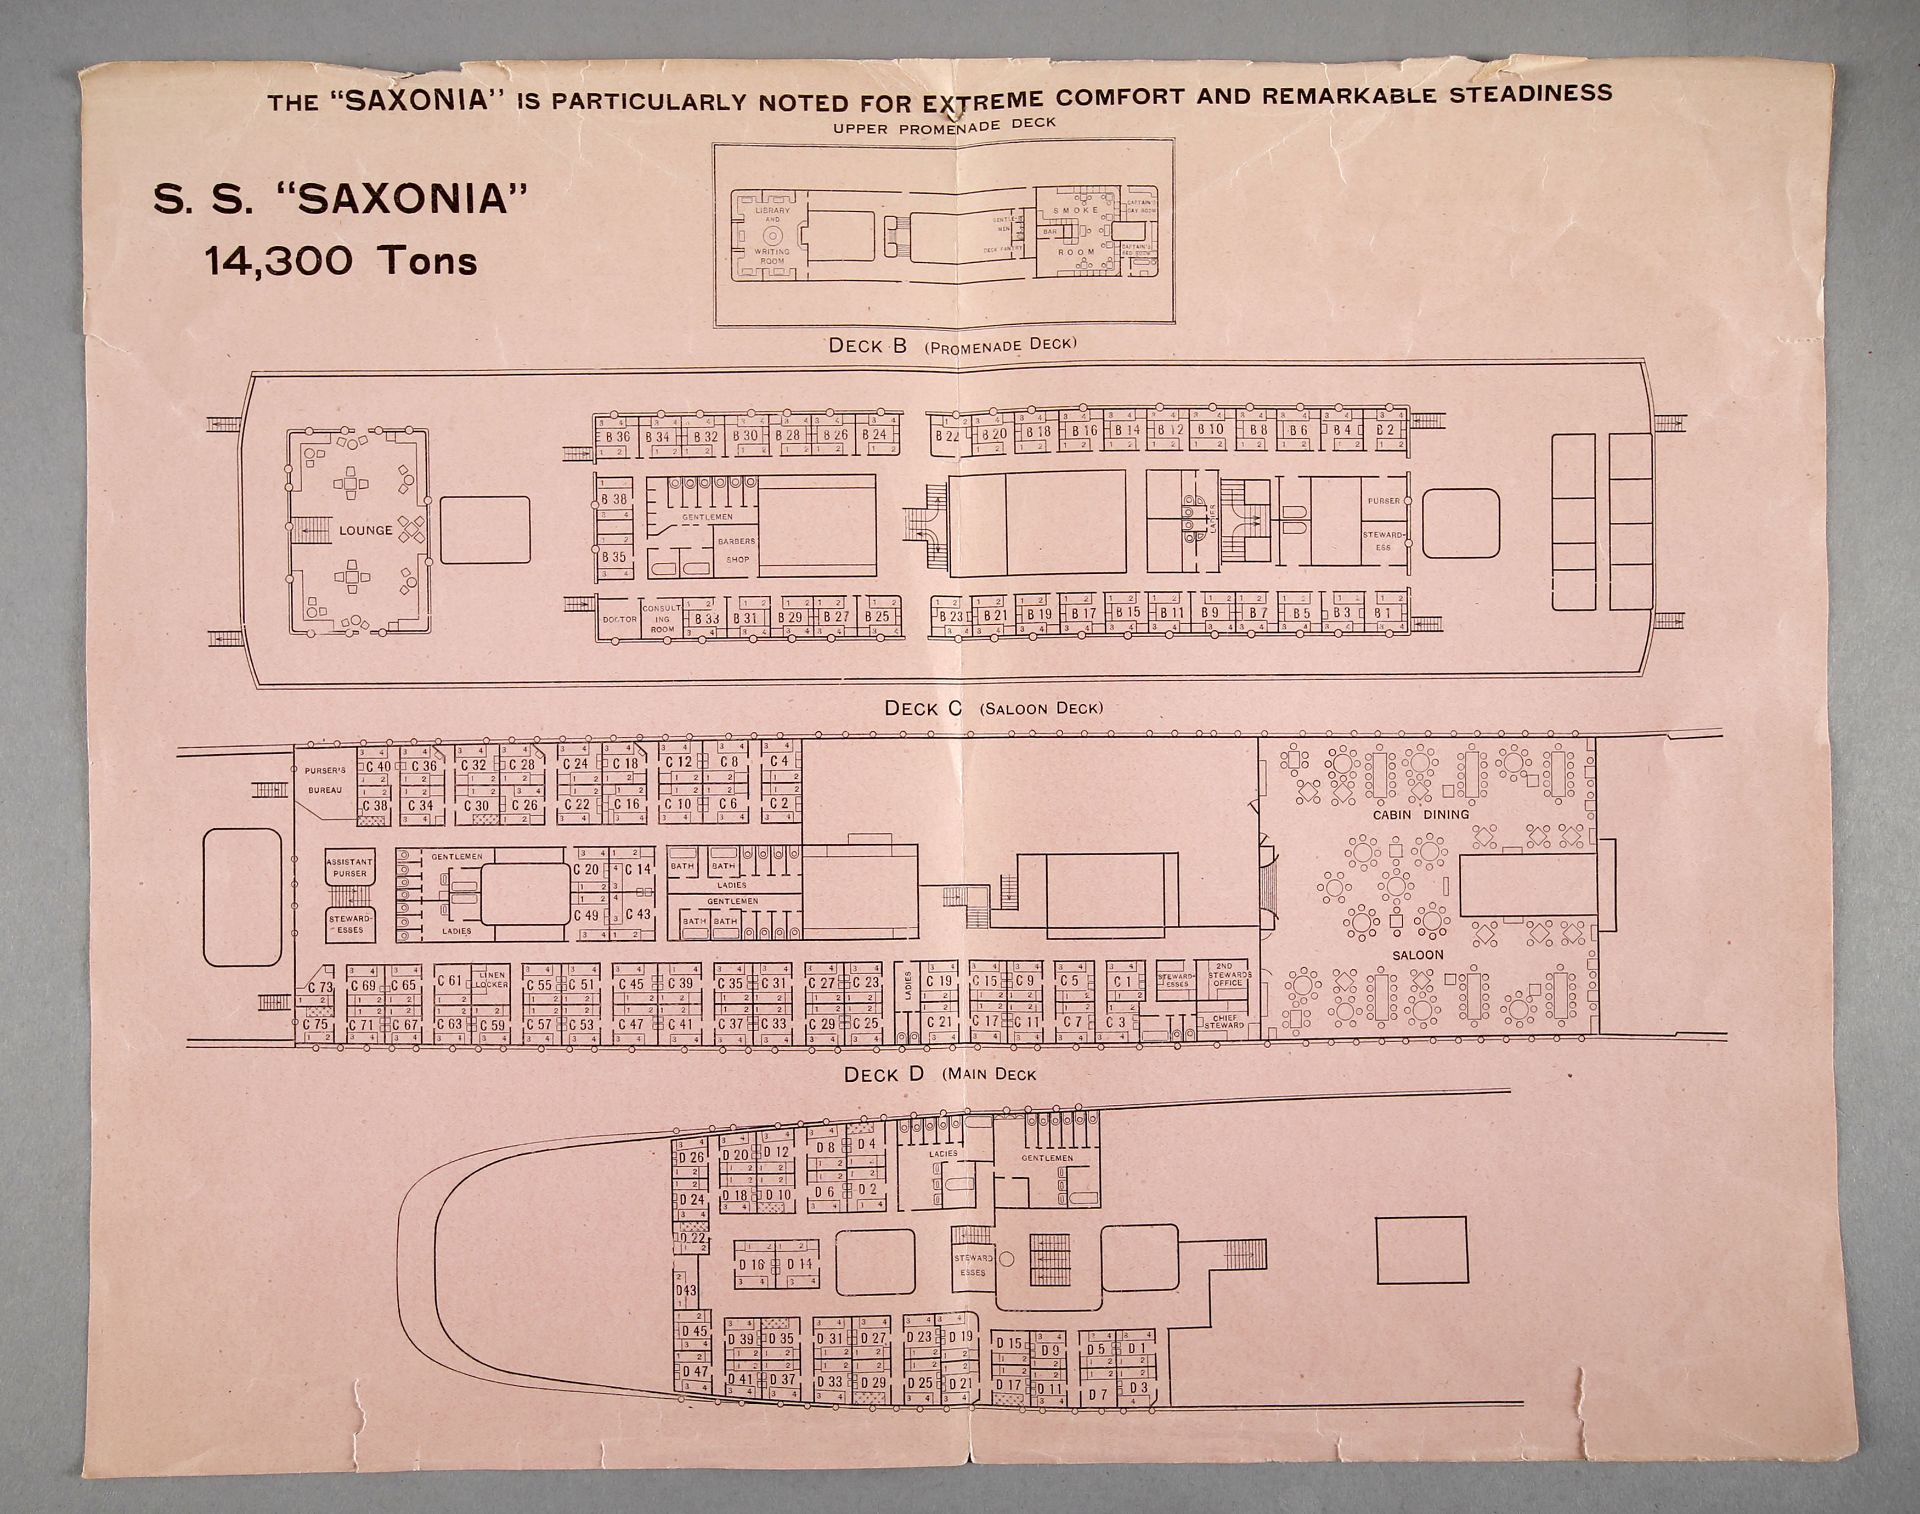 Decksplan der 'SS Saxonia' mit Preisliste für die Erste Klasse, 'Cunard Line', Liverpool 1920